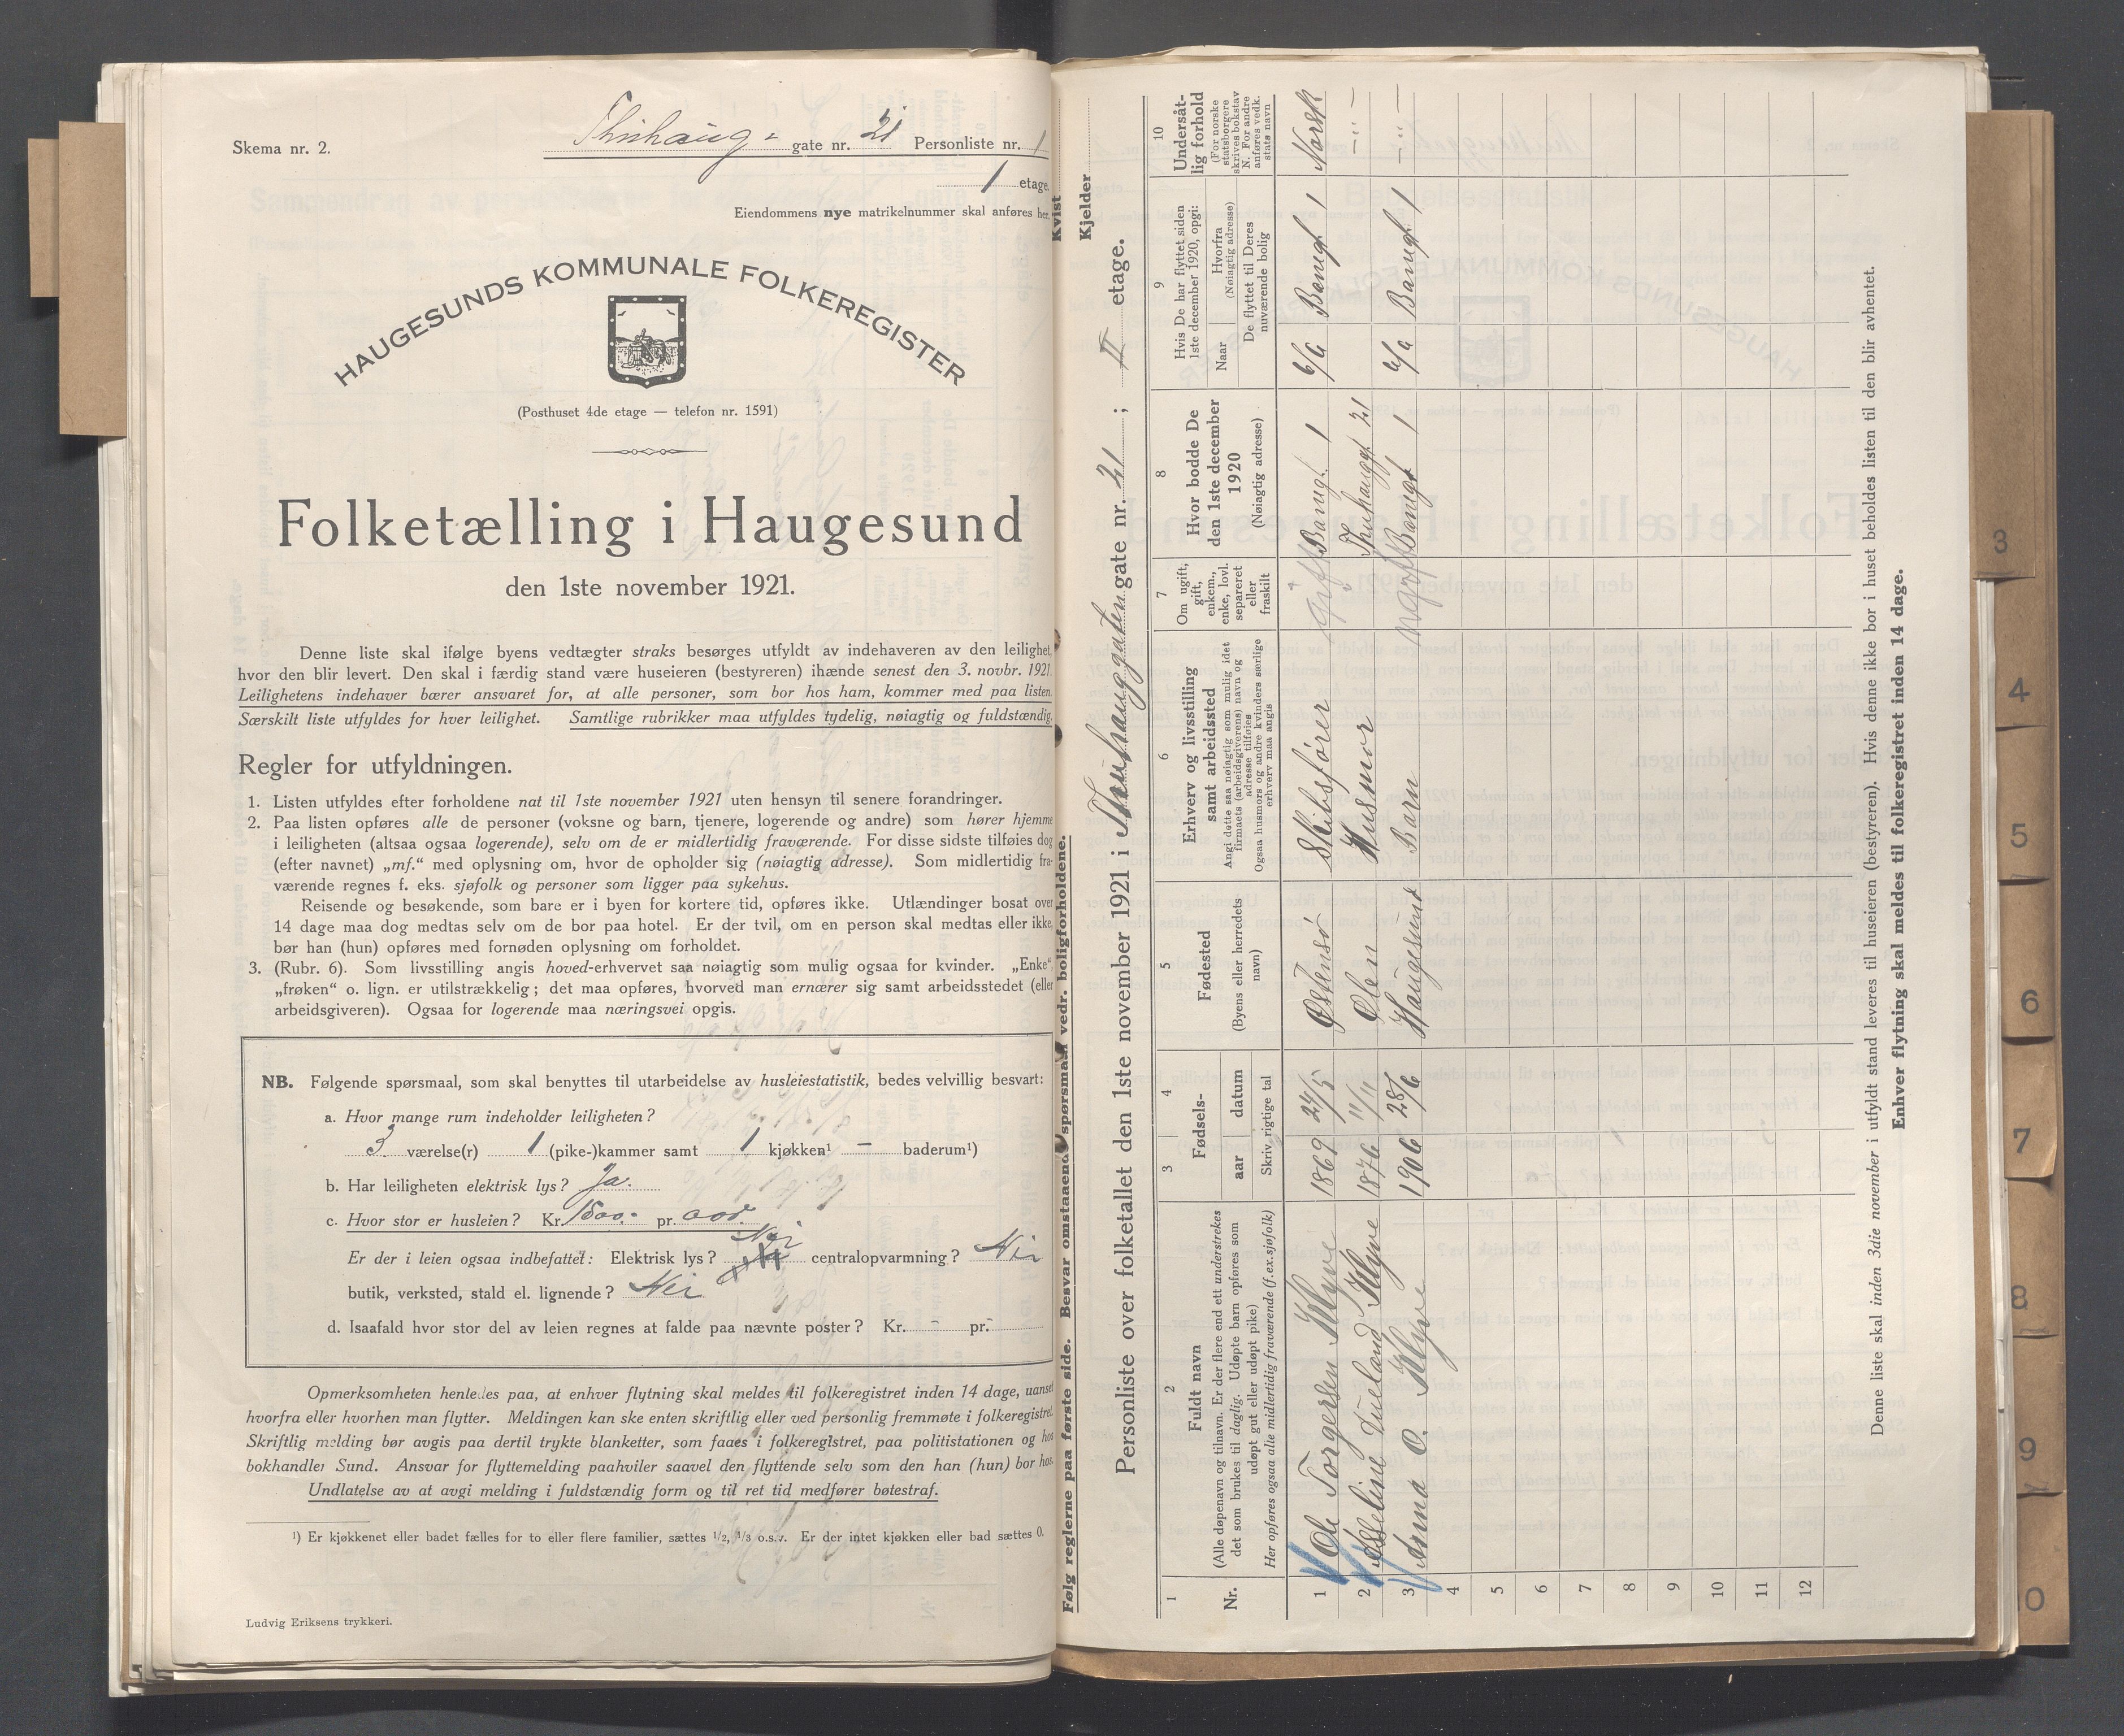 IKAR, Local census 1.11.1921 for Haugesund, 1921, p. 5434